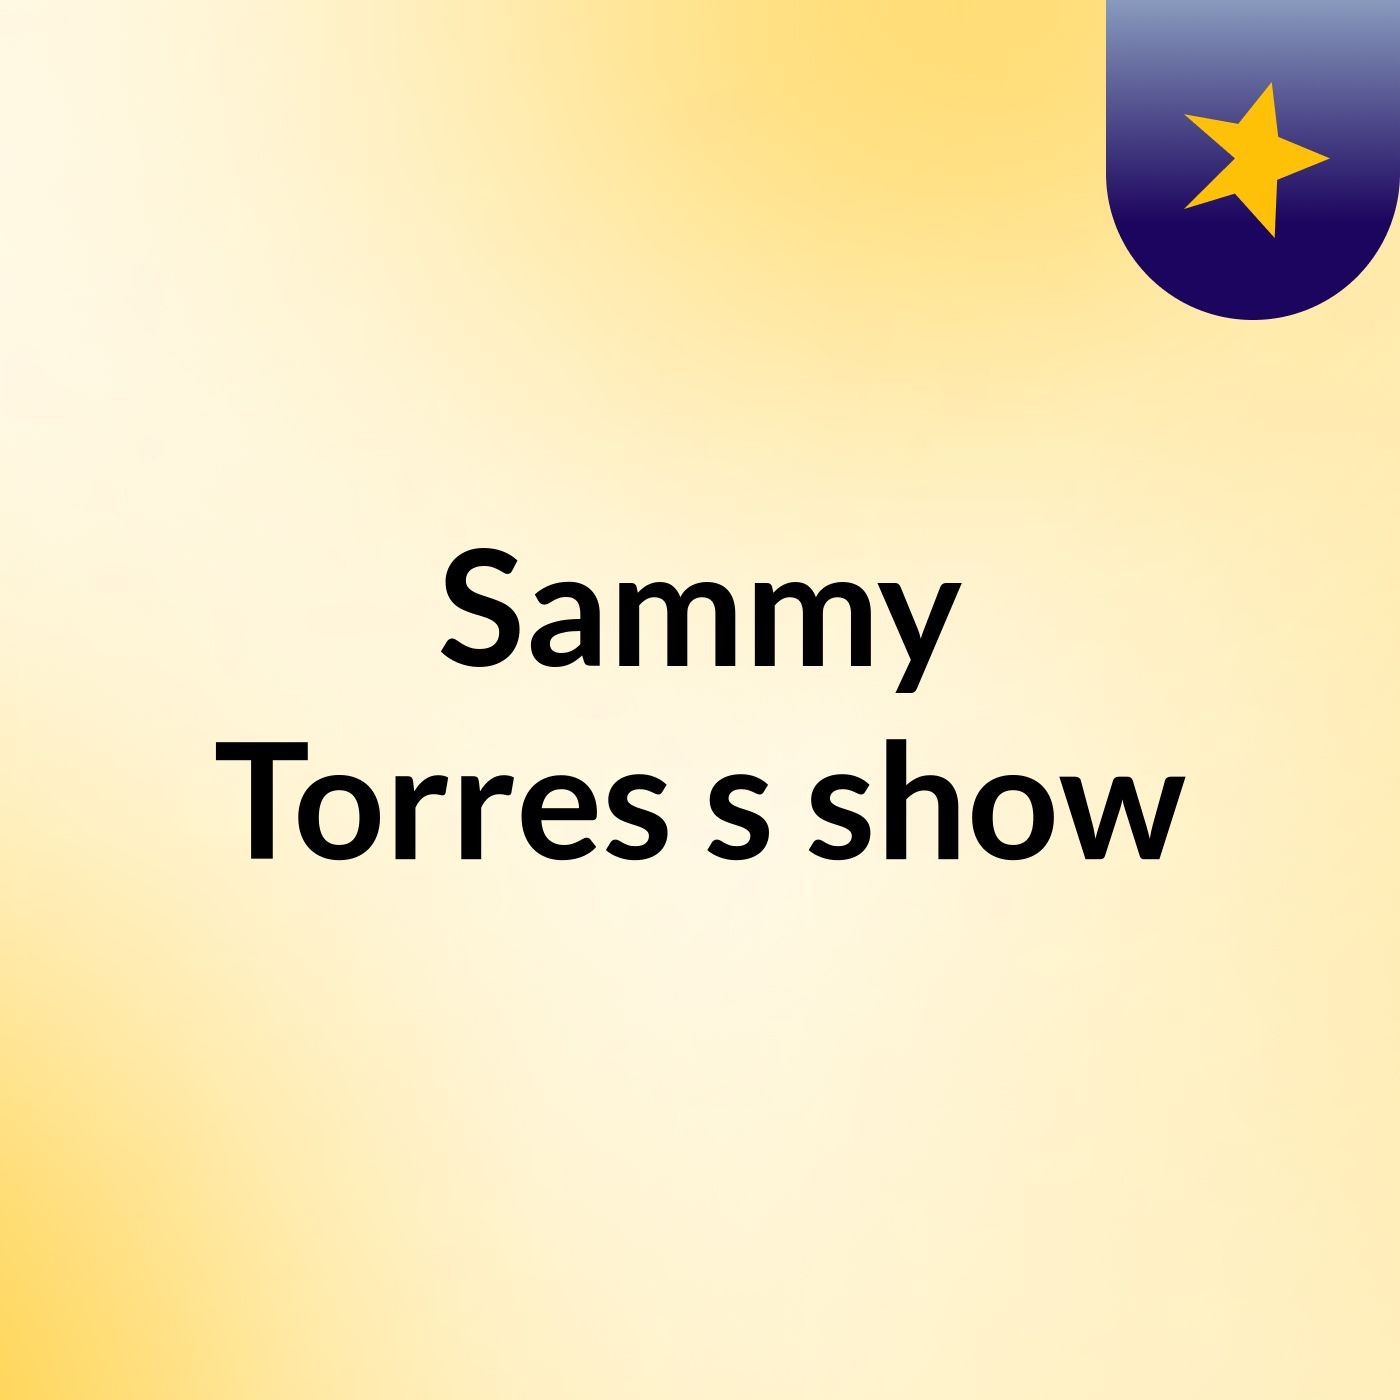 Sammy Torres's show